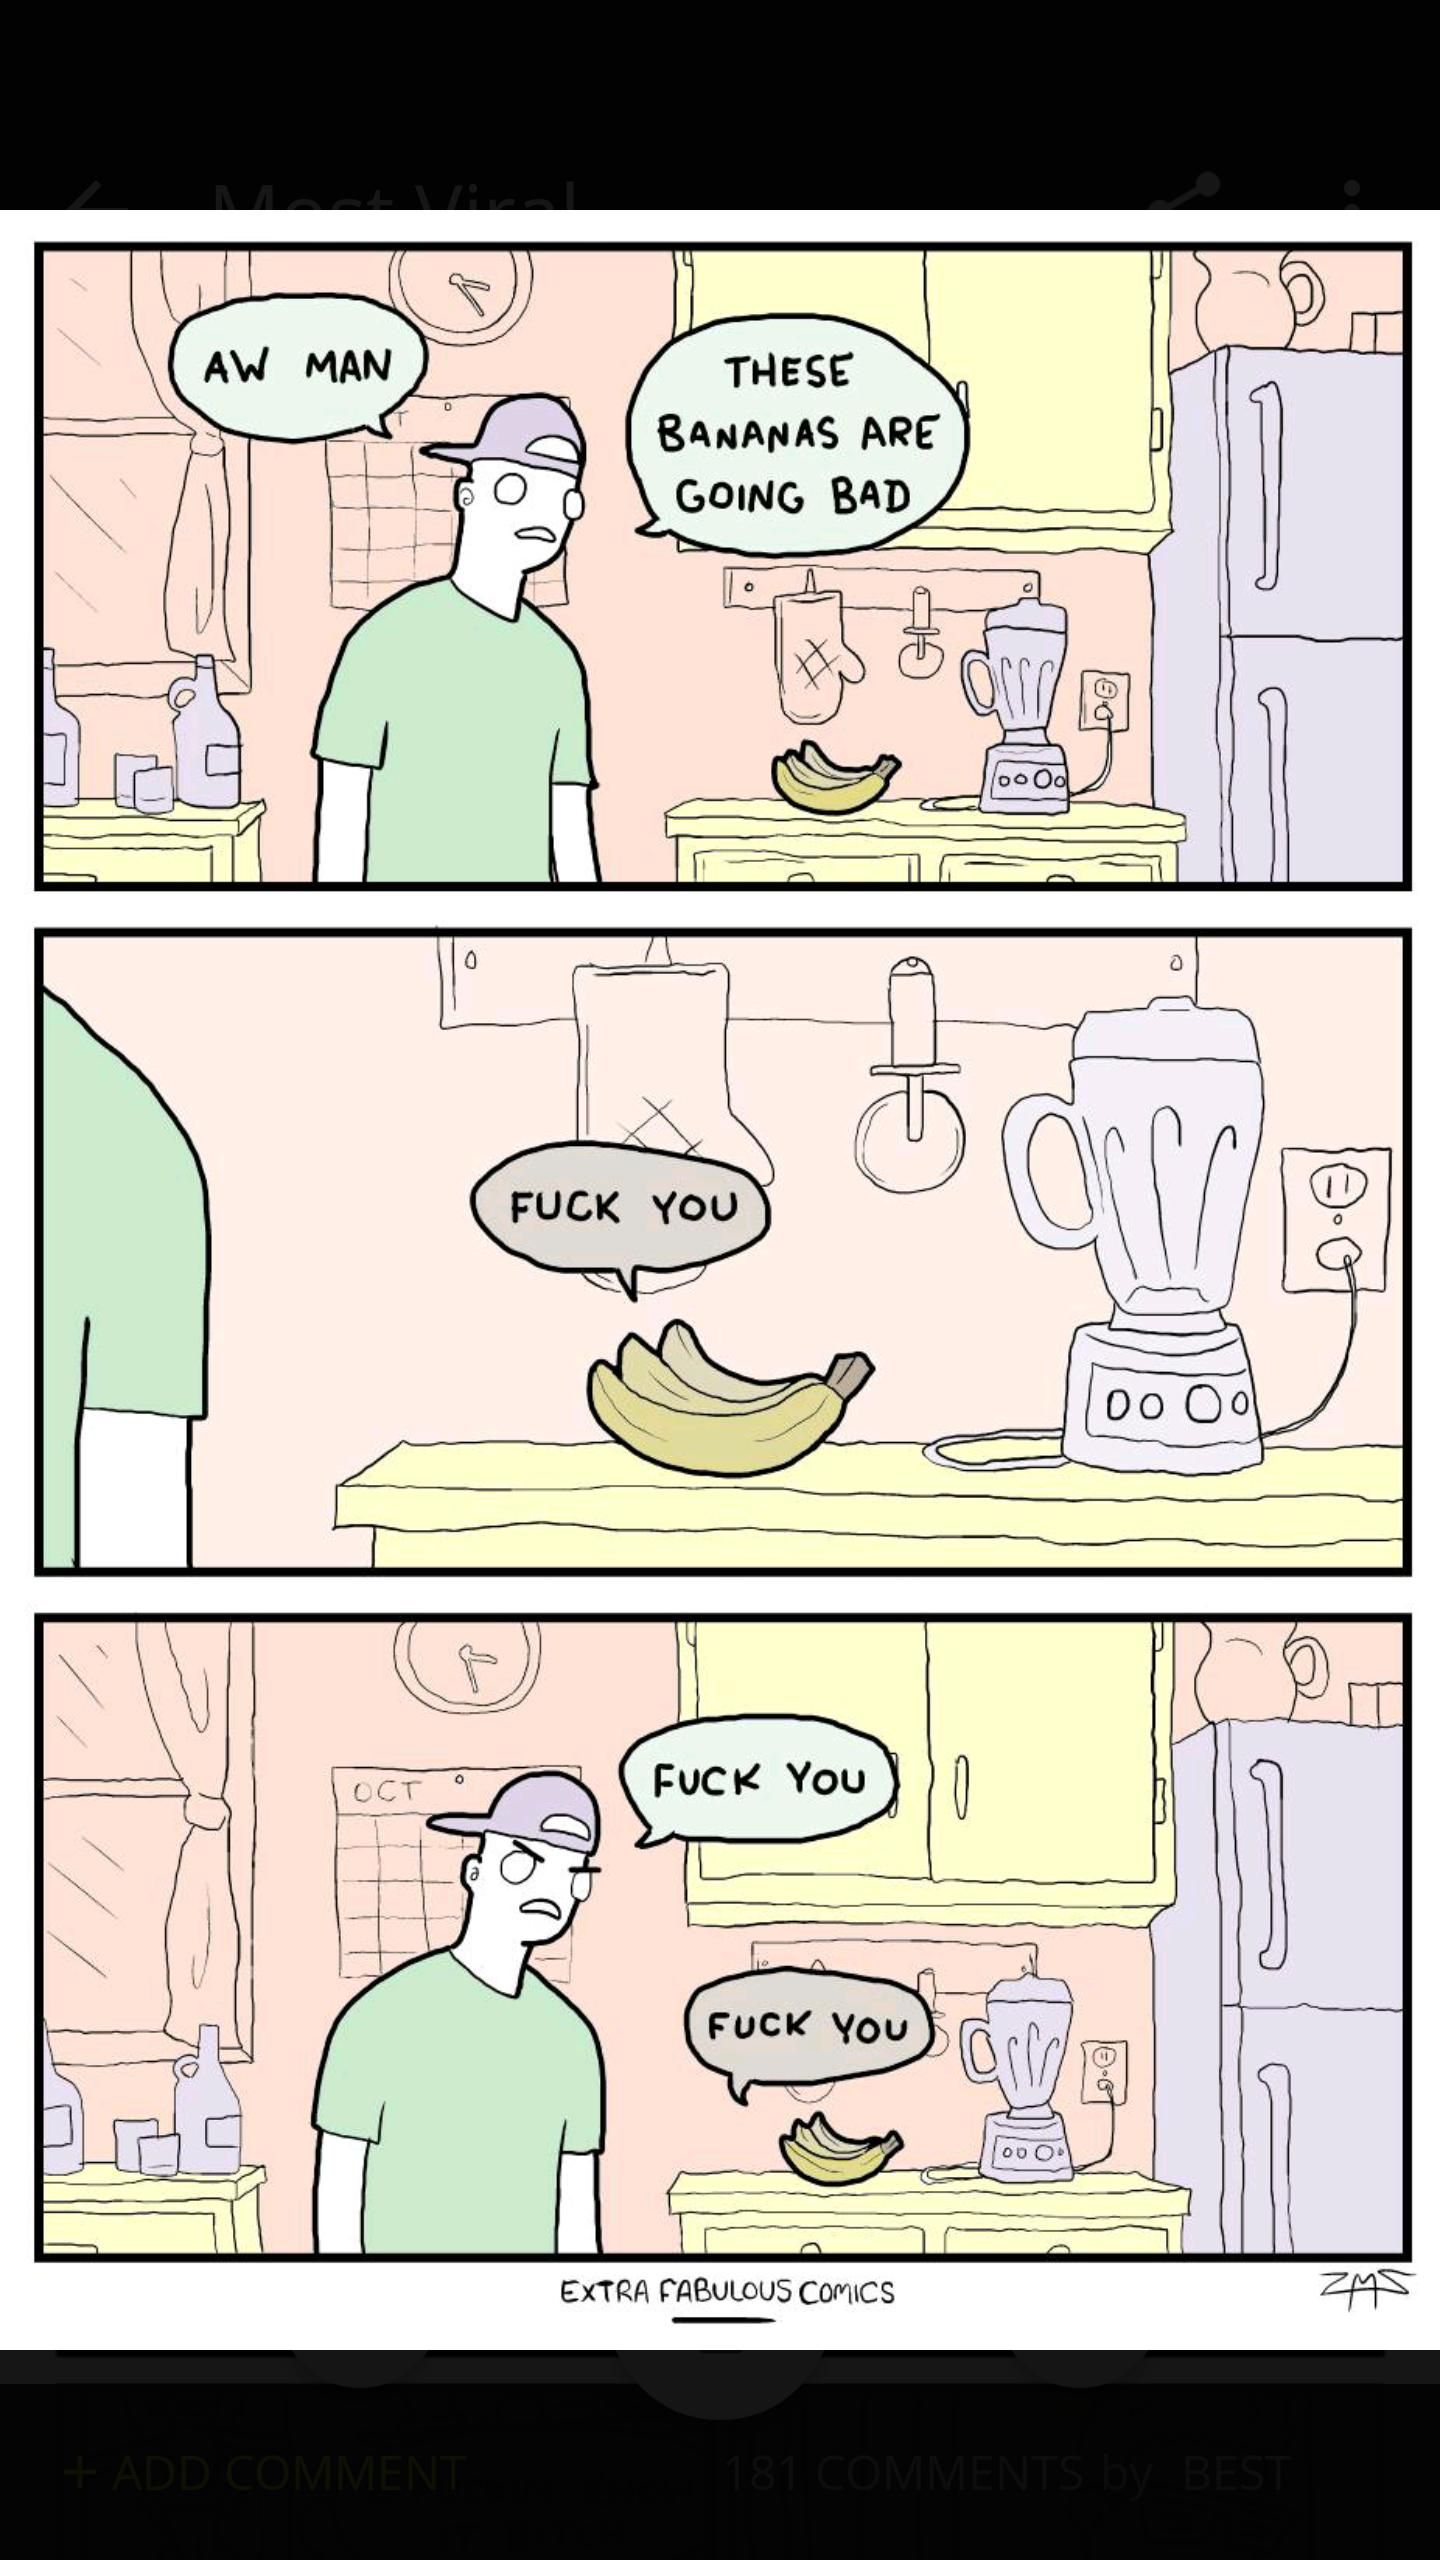 Bad bananas